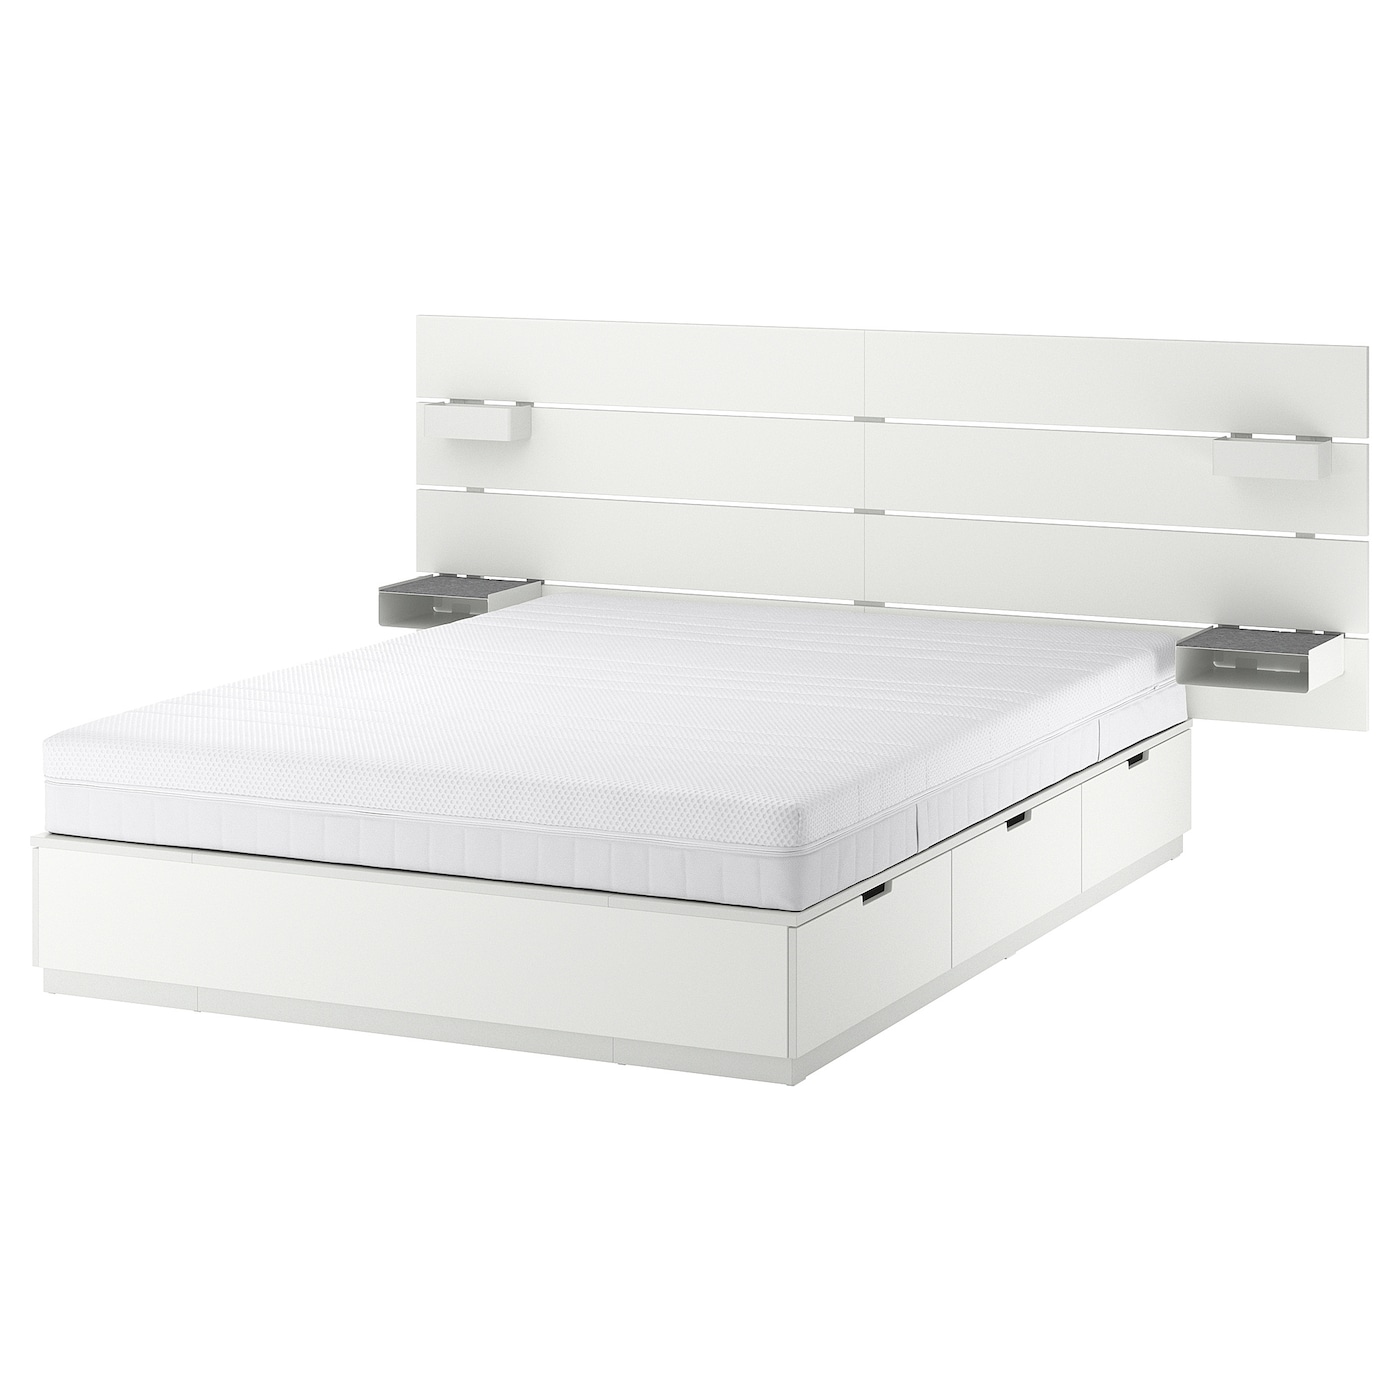 Каркас кровати с ящиком для хранения и матрасом - IKEA NORDLI, 200х140 см, матрас жесткий, белый, НОРДЛИ ИКЕА